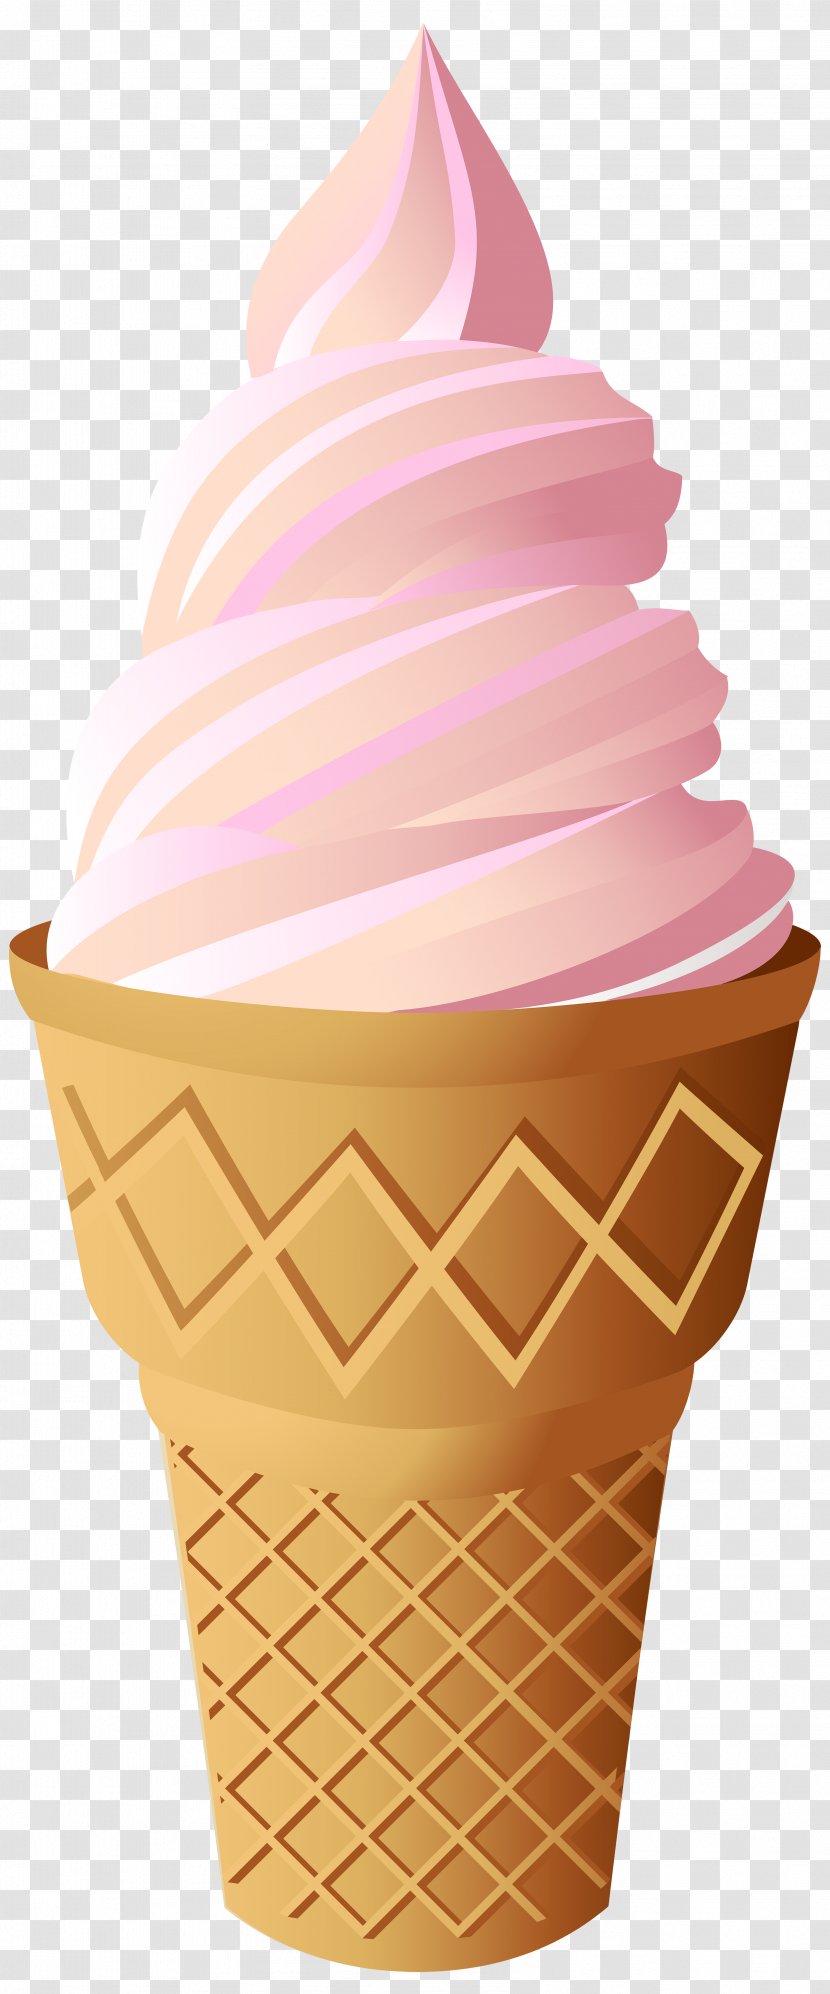 Ice Cream Cones Cupcake Neapolitan Transparent PNG